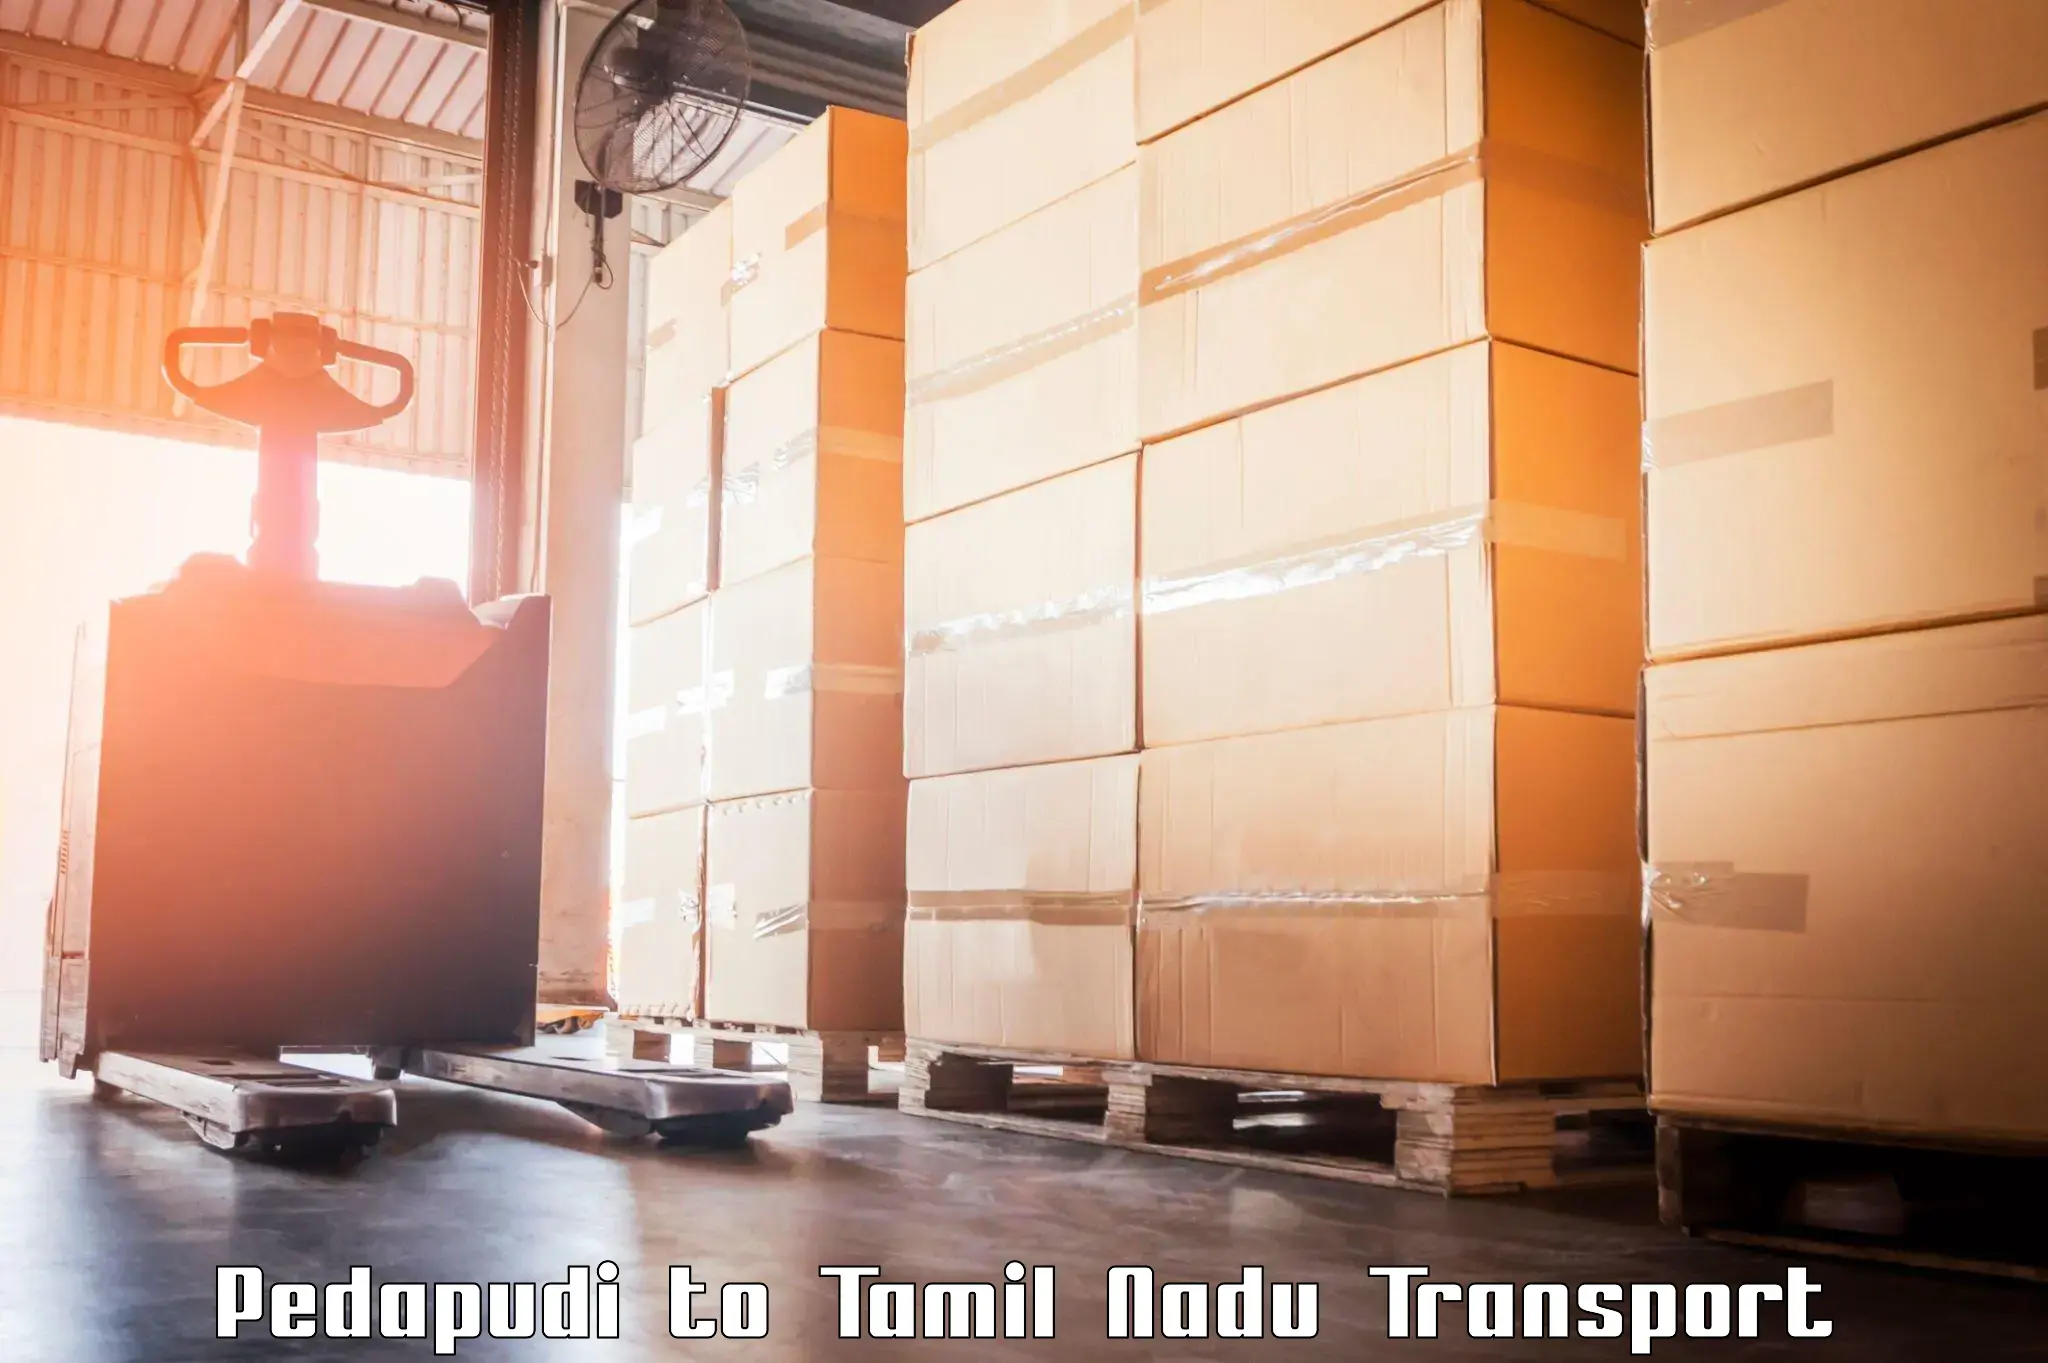 Goods transport services in Pedapudi to Manamelkudi